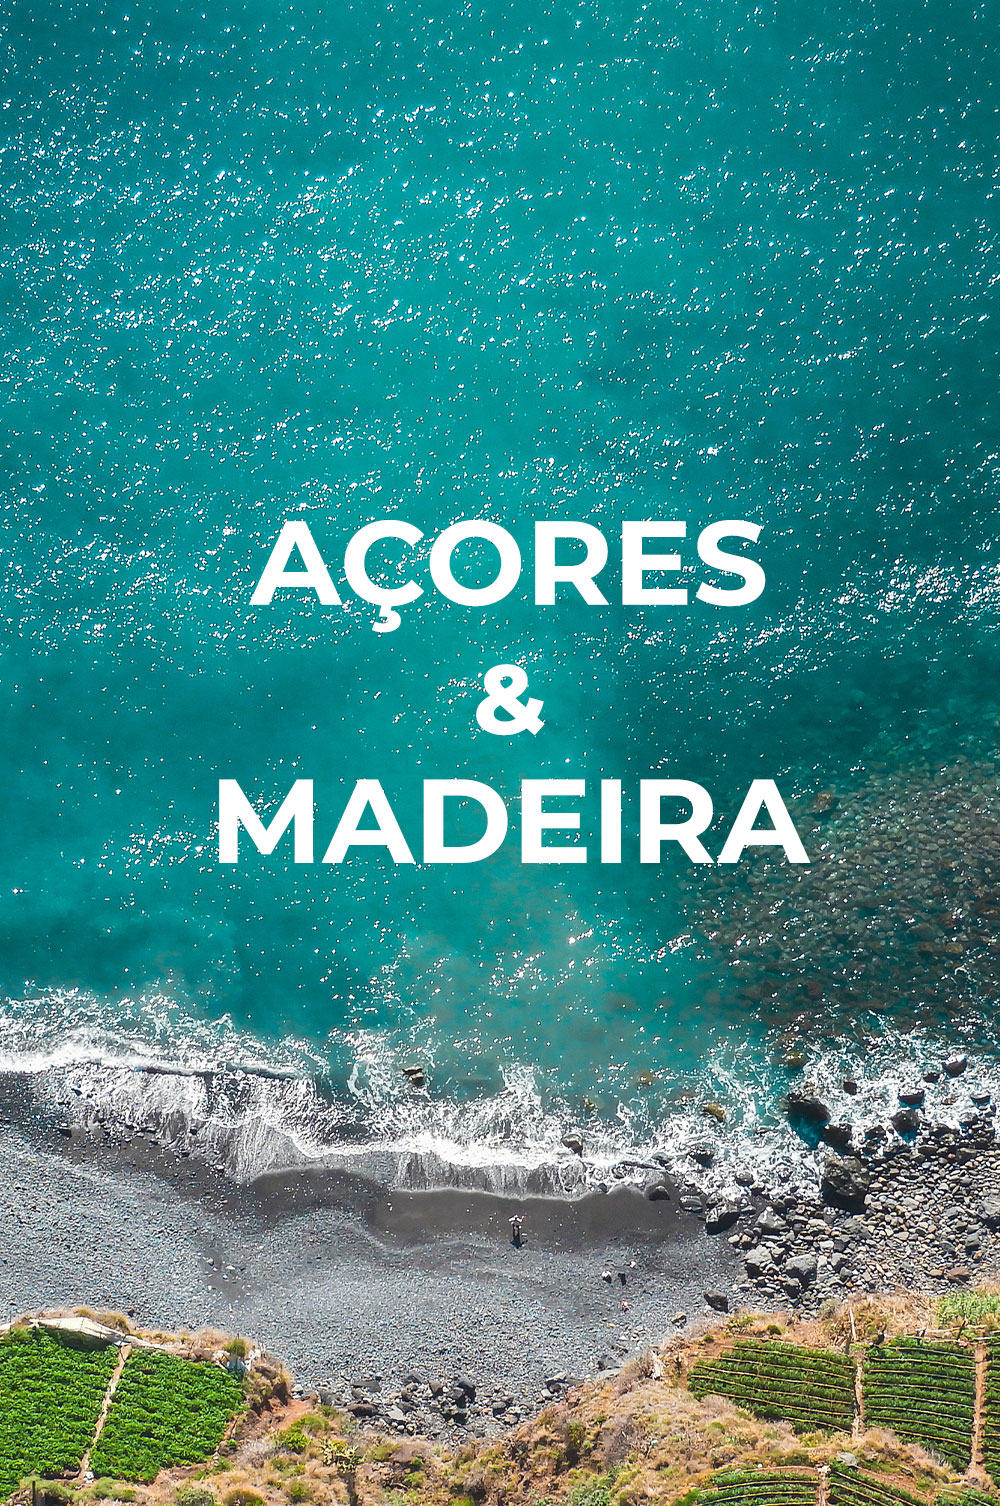 Açores e Madeira: descubra os vinhos das ilhas portuguesas